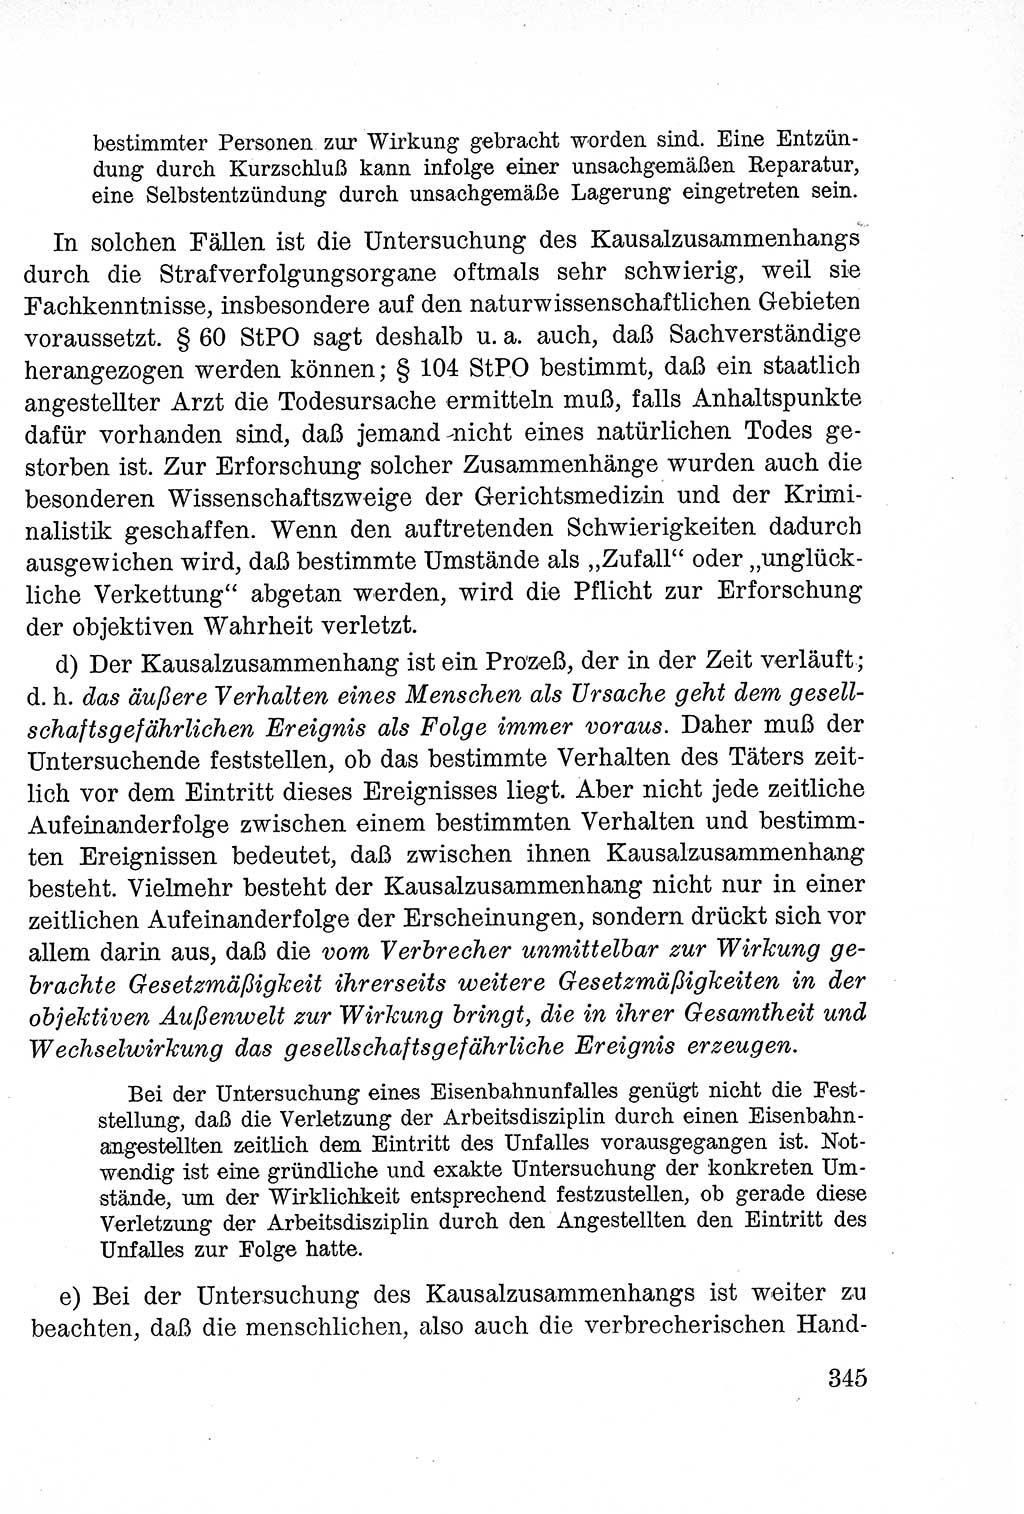 Lehrbuch des Strafrechts der Deutschen Demokratischen Republik (DDR), Allgemeiner Teil 1957, Seite 345 (Lb. Strafr. DDR AT 1957, S. 345)